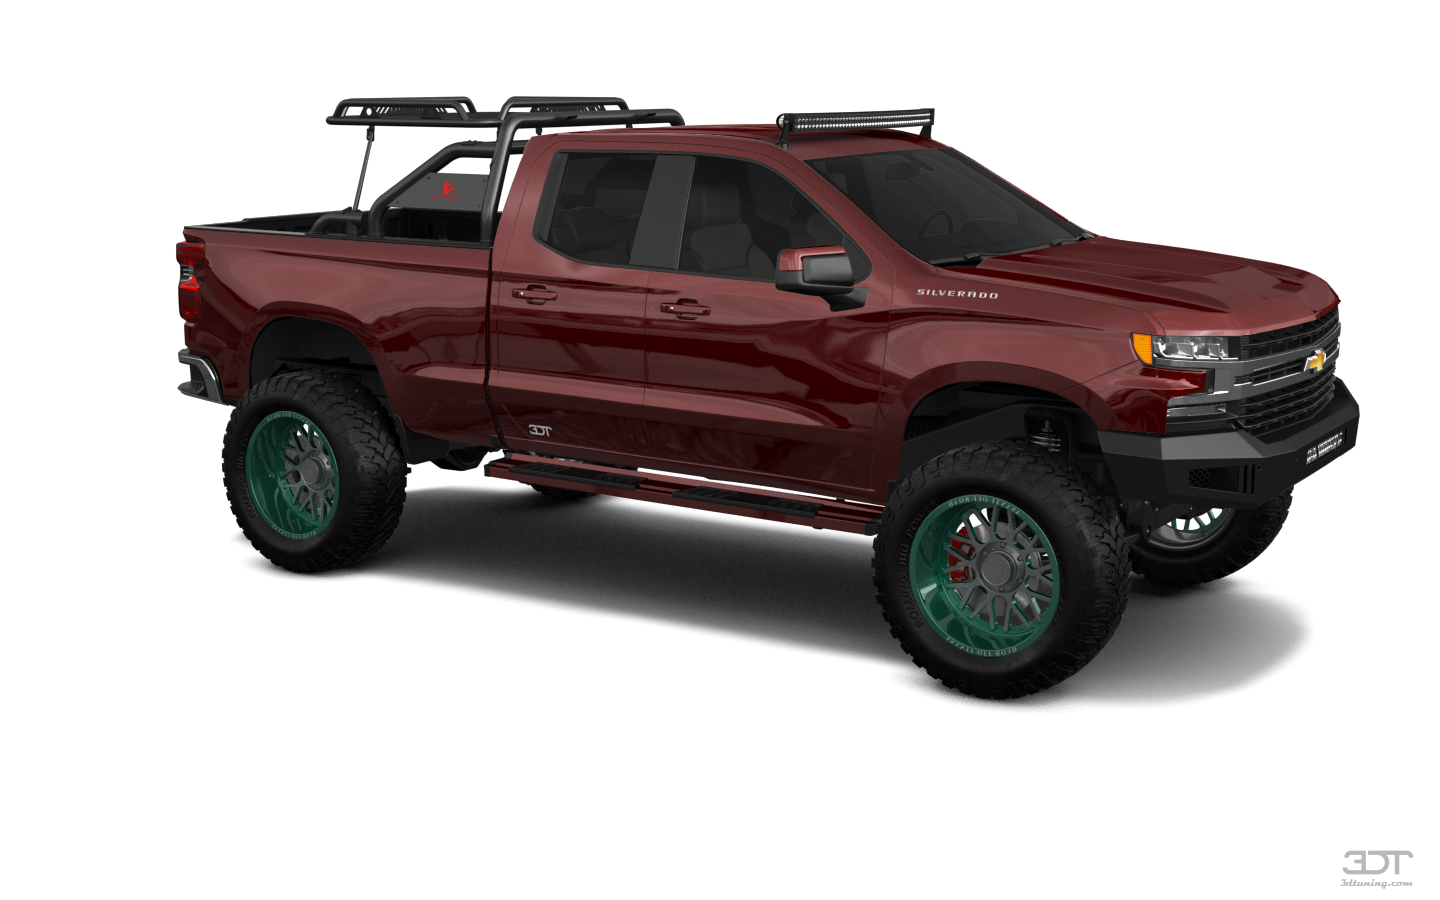 Chevrolet Silverado 1500 6.6 ft box 4 Door pickup truck 2021 tuning